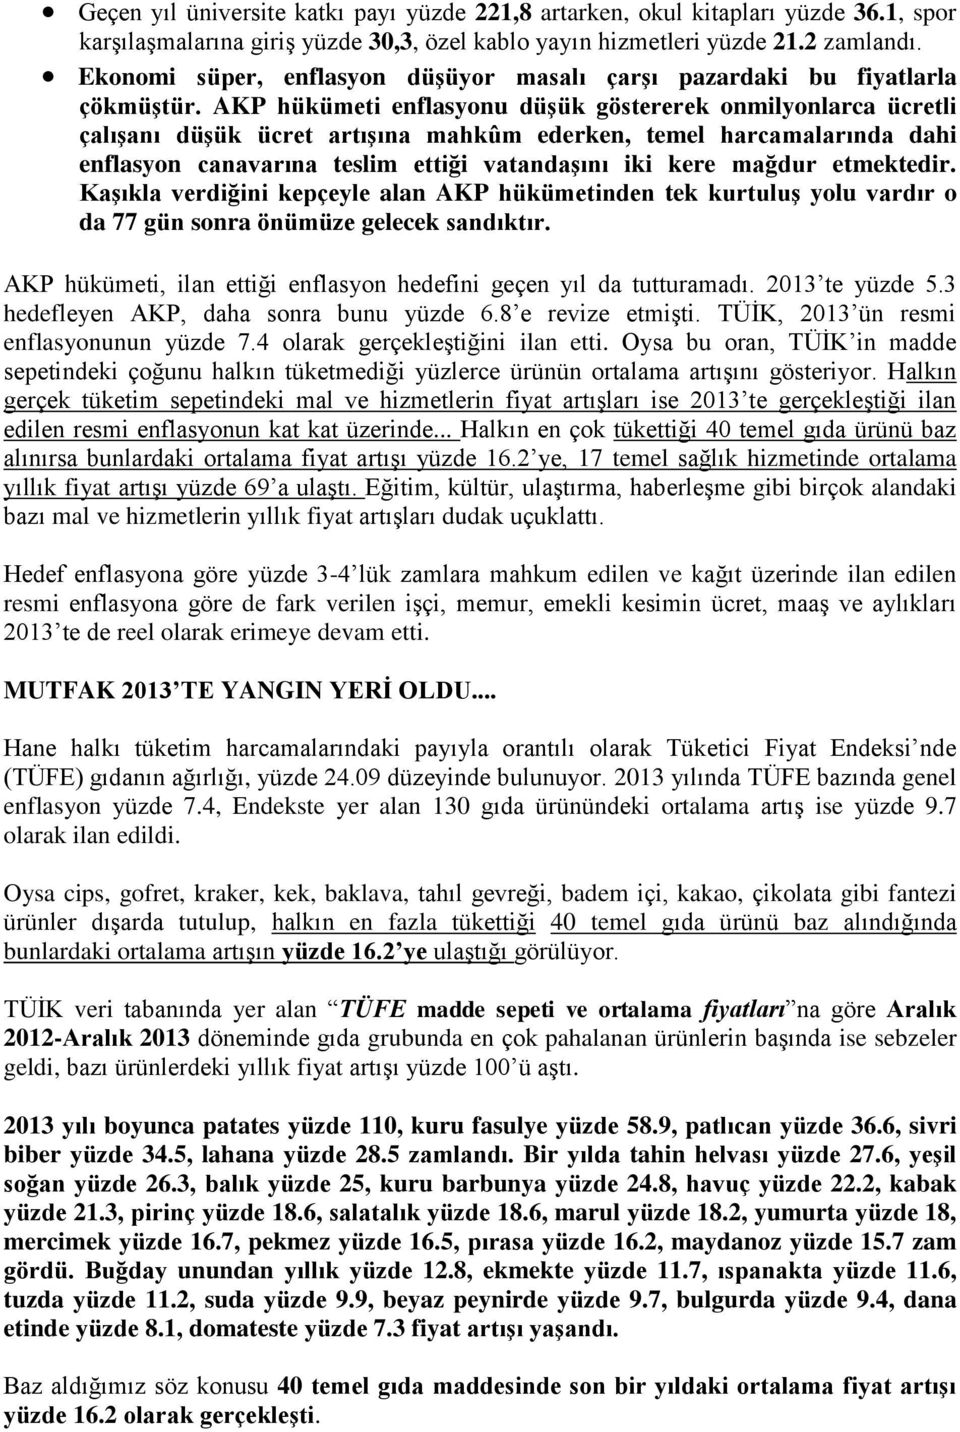 AKP hükümeti enflasyonu düşük göstererek onmilyonlarca ücretli çalışanı düşük ücret artışına mahkûm ederken, temel harcamalarında dahi enflasyon canavarına teslim ettiği vatandaşını iki kere mağdur